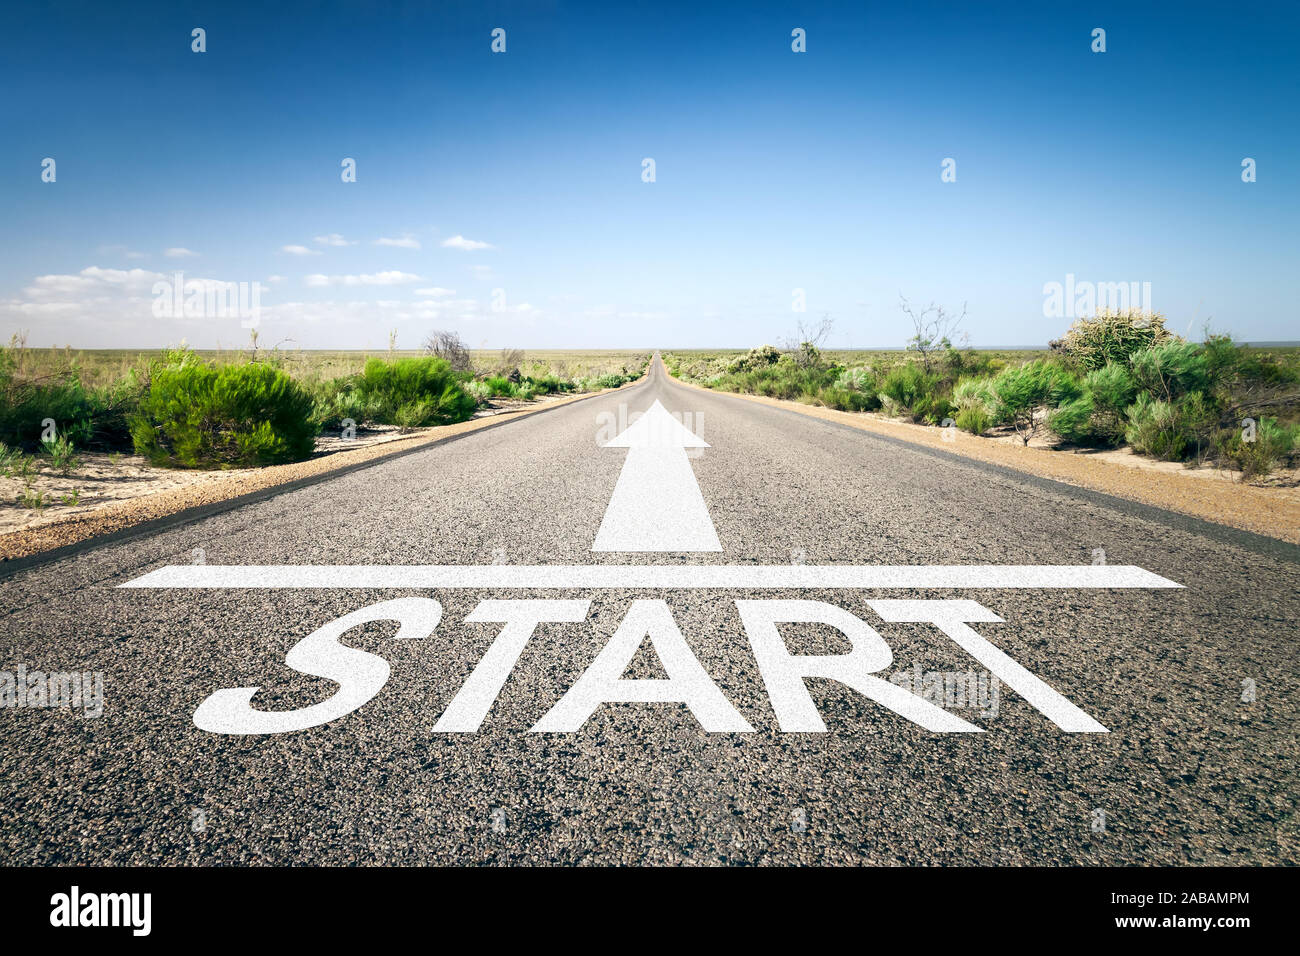 Eine unendlich lange Strasse mit der wegweisenden Aufschrift: "Start" Stock Photo